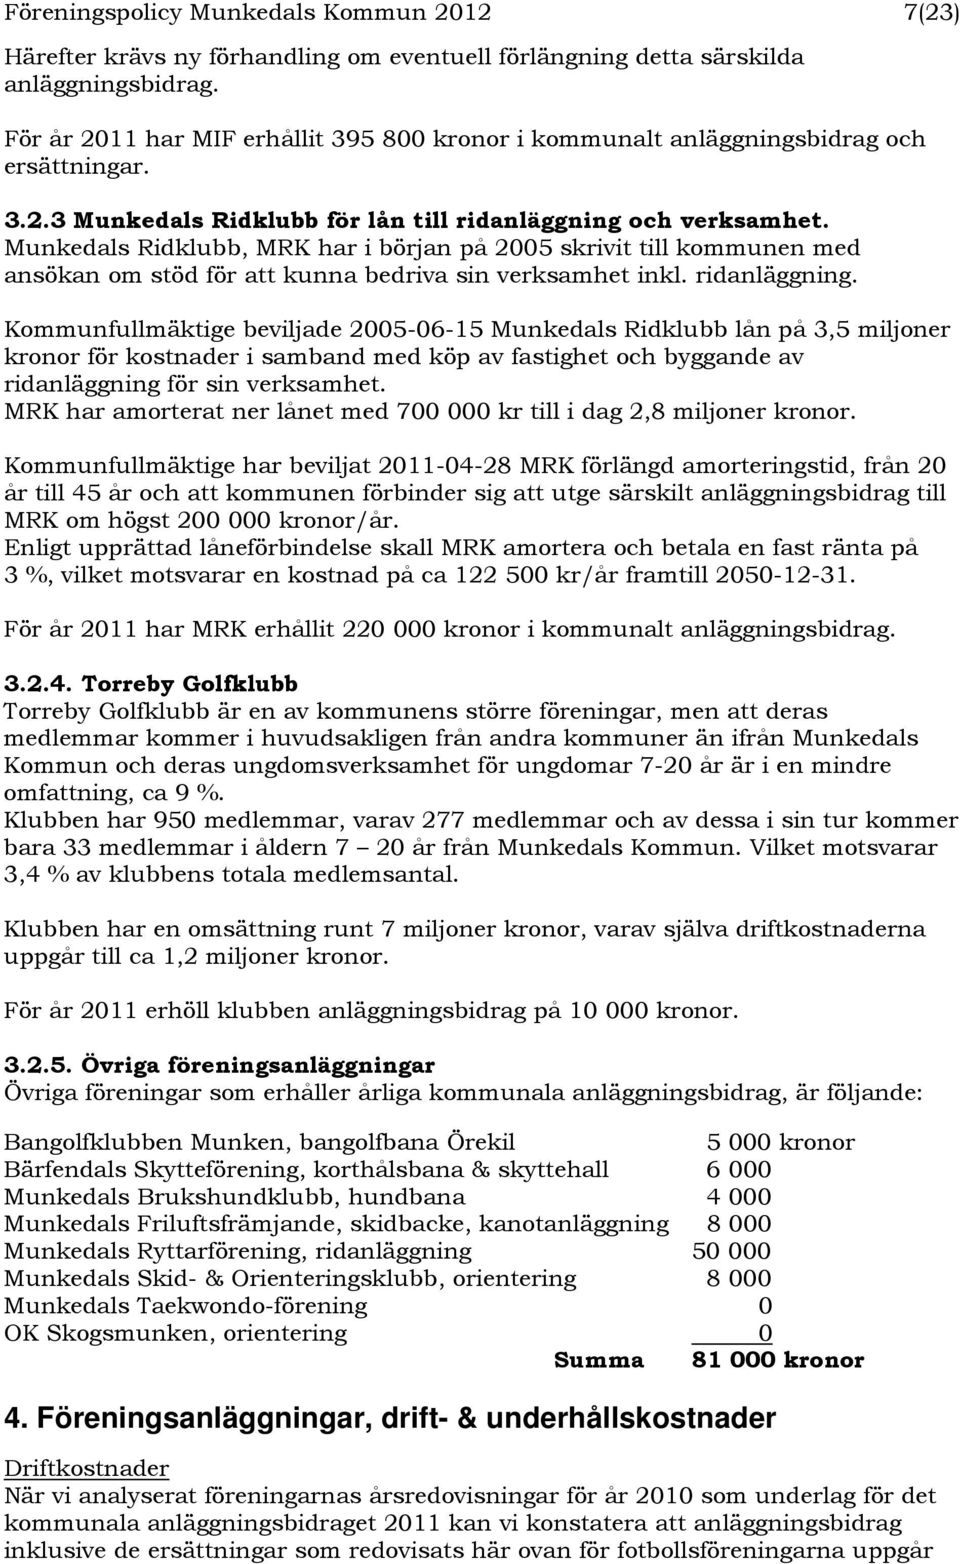 Munkedals Ridklubb, MRK har i början på 2005 skrivit till kommunen med ansökan om stöd för att kunna bedriva sin verksamhet inkl. ridanläggning.